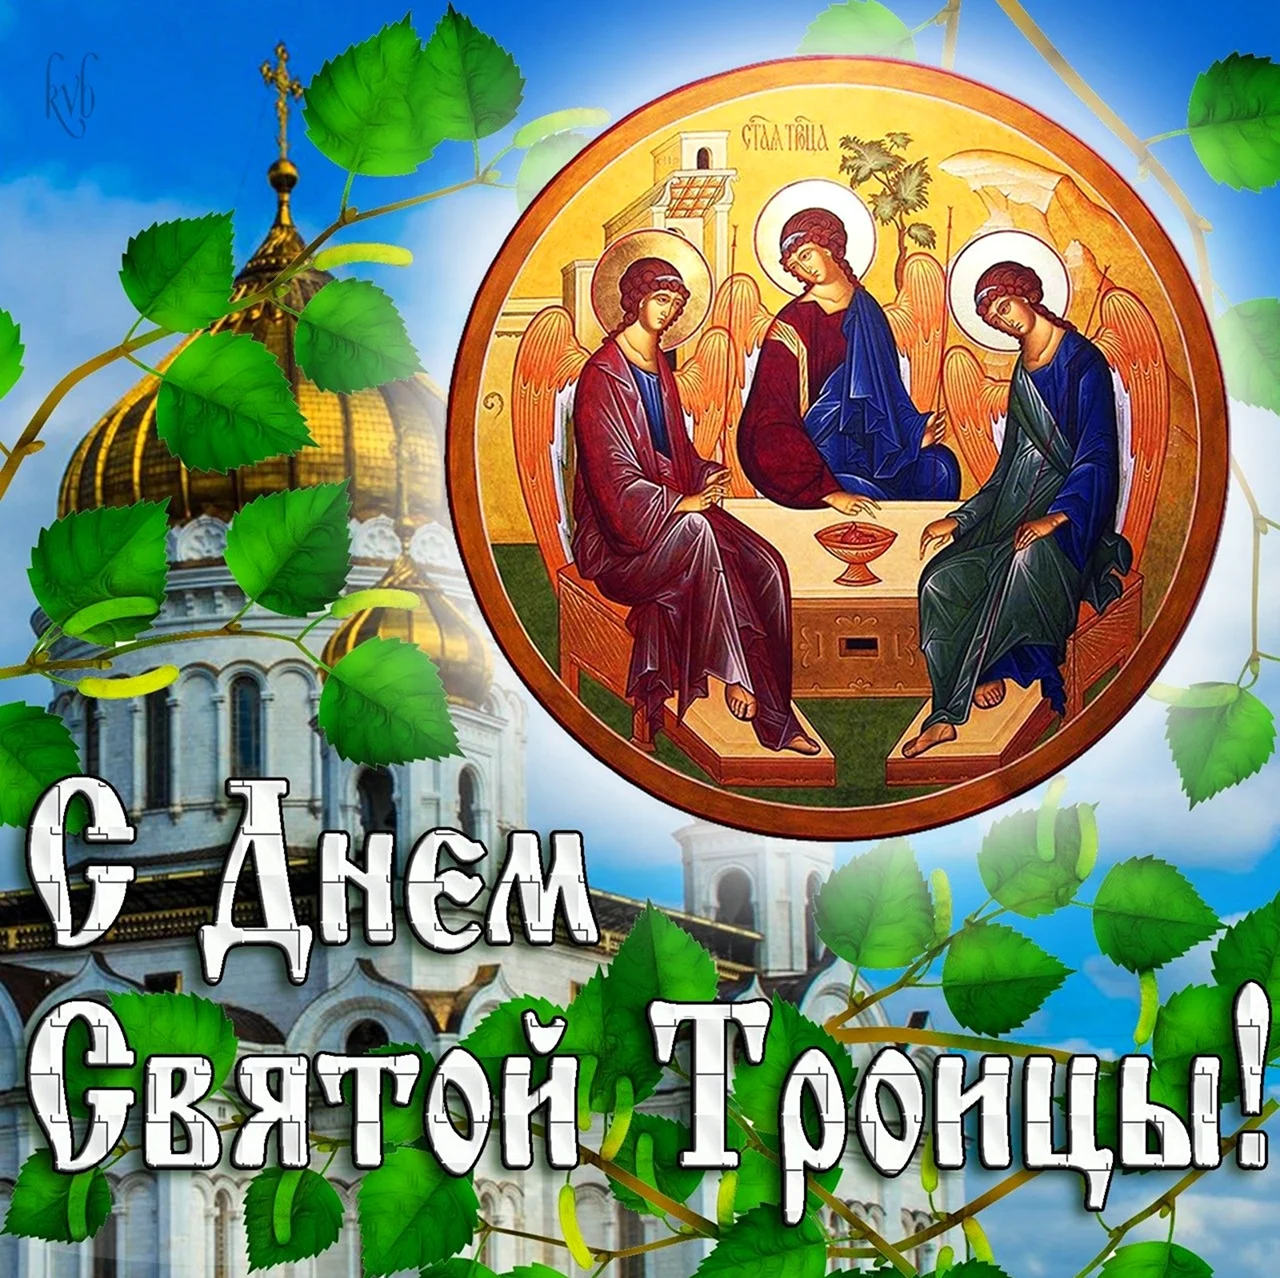 Троица — день Святой Троицы Пятидесятница. Поздравление